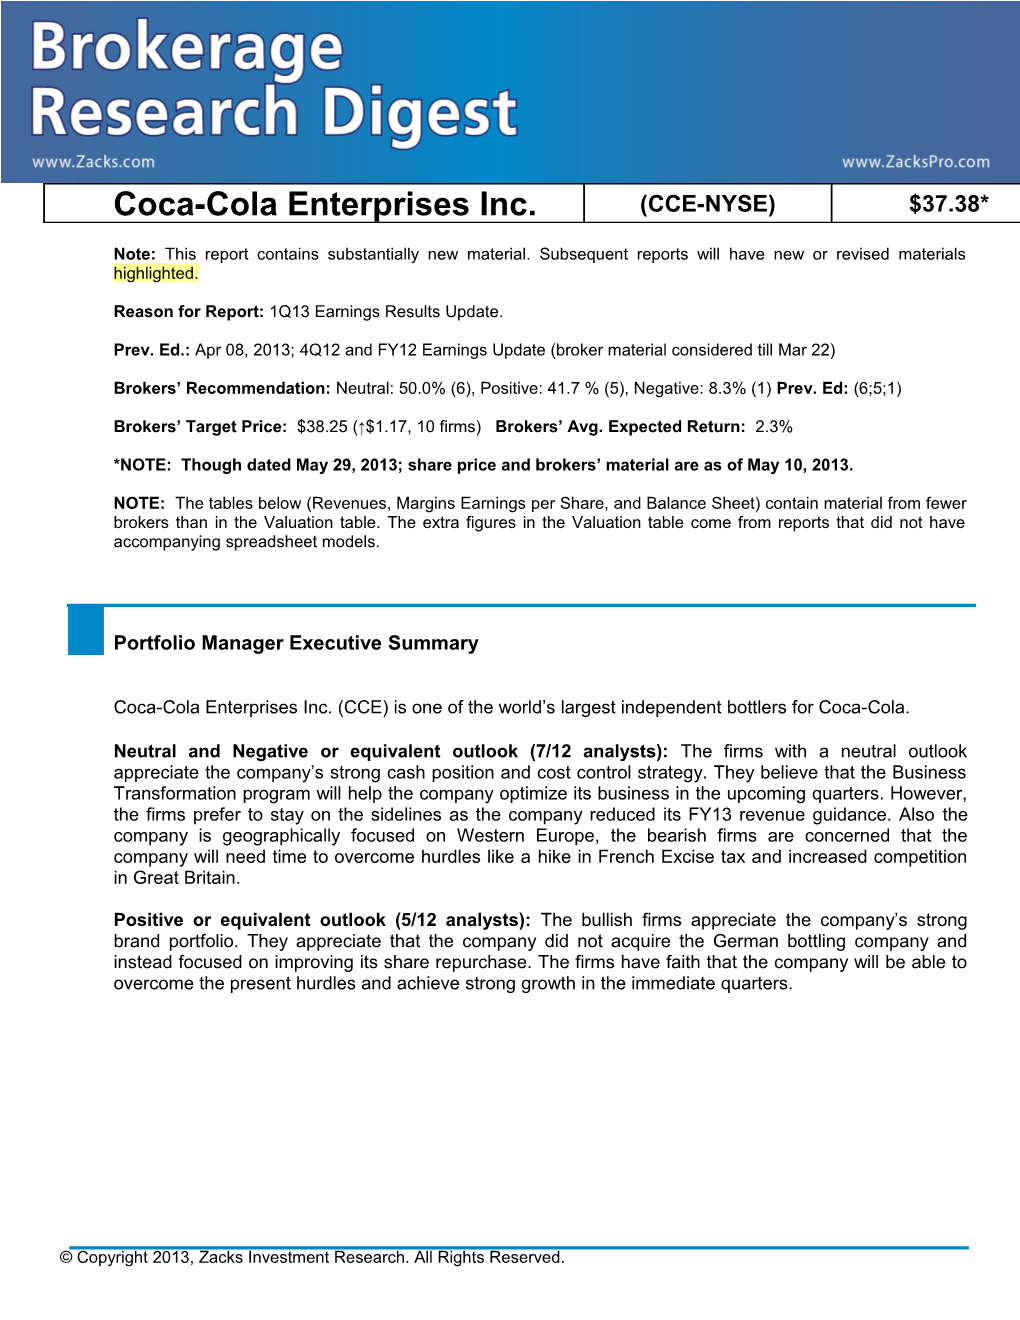 Coca-Cola Enterprises Inc